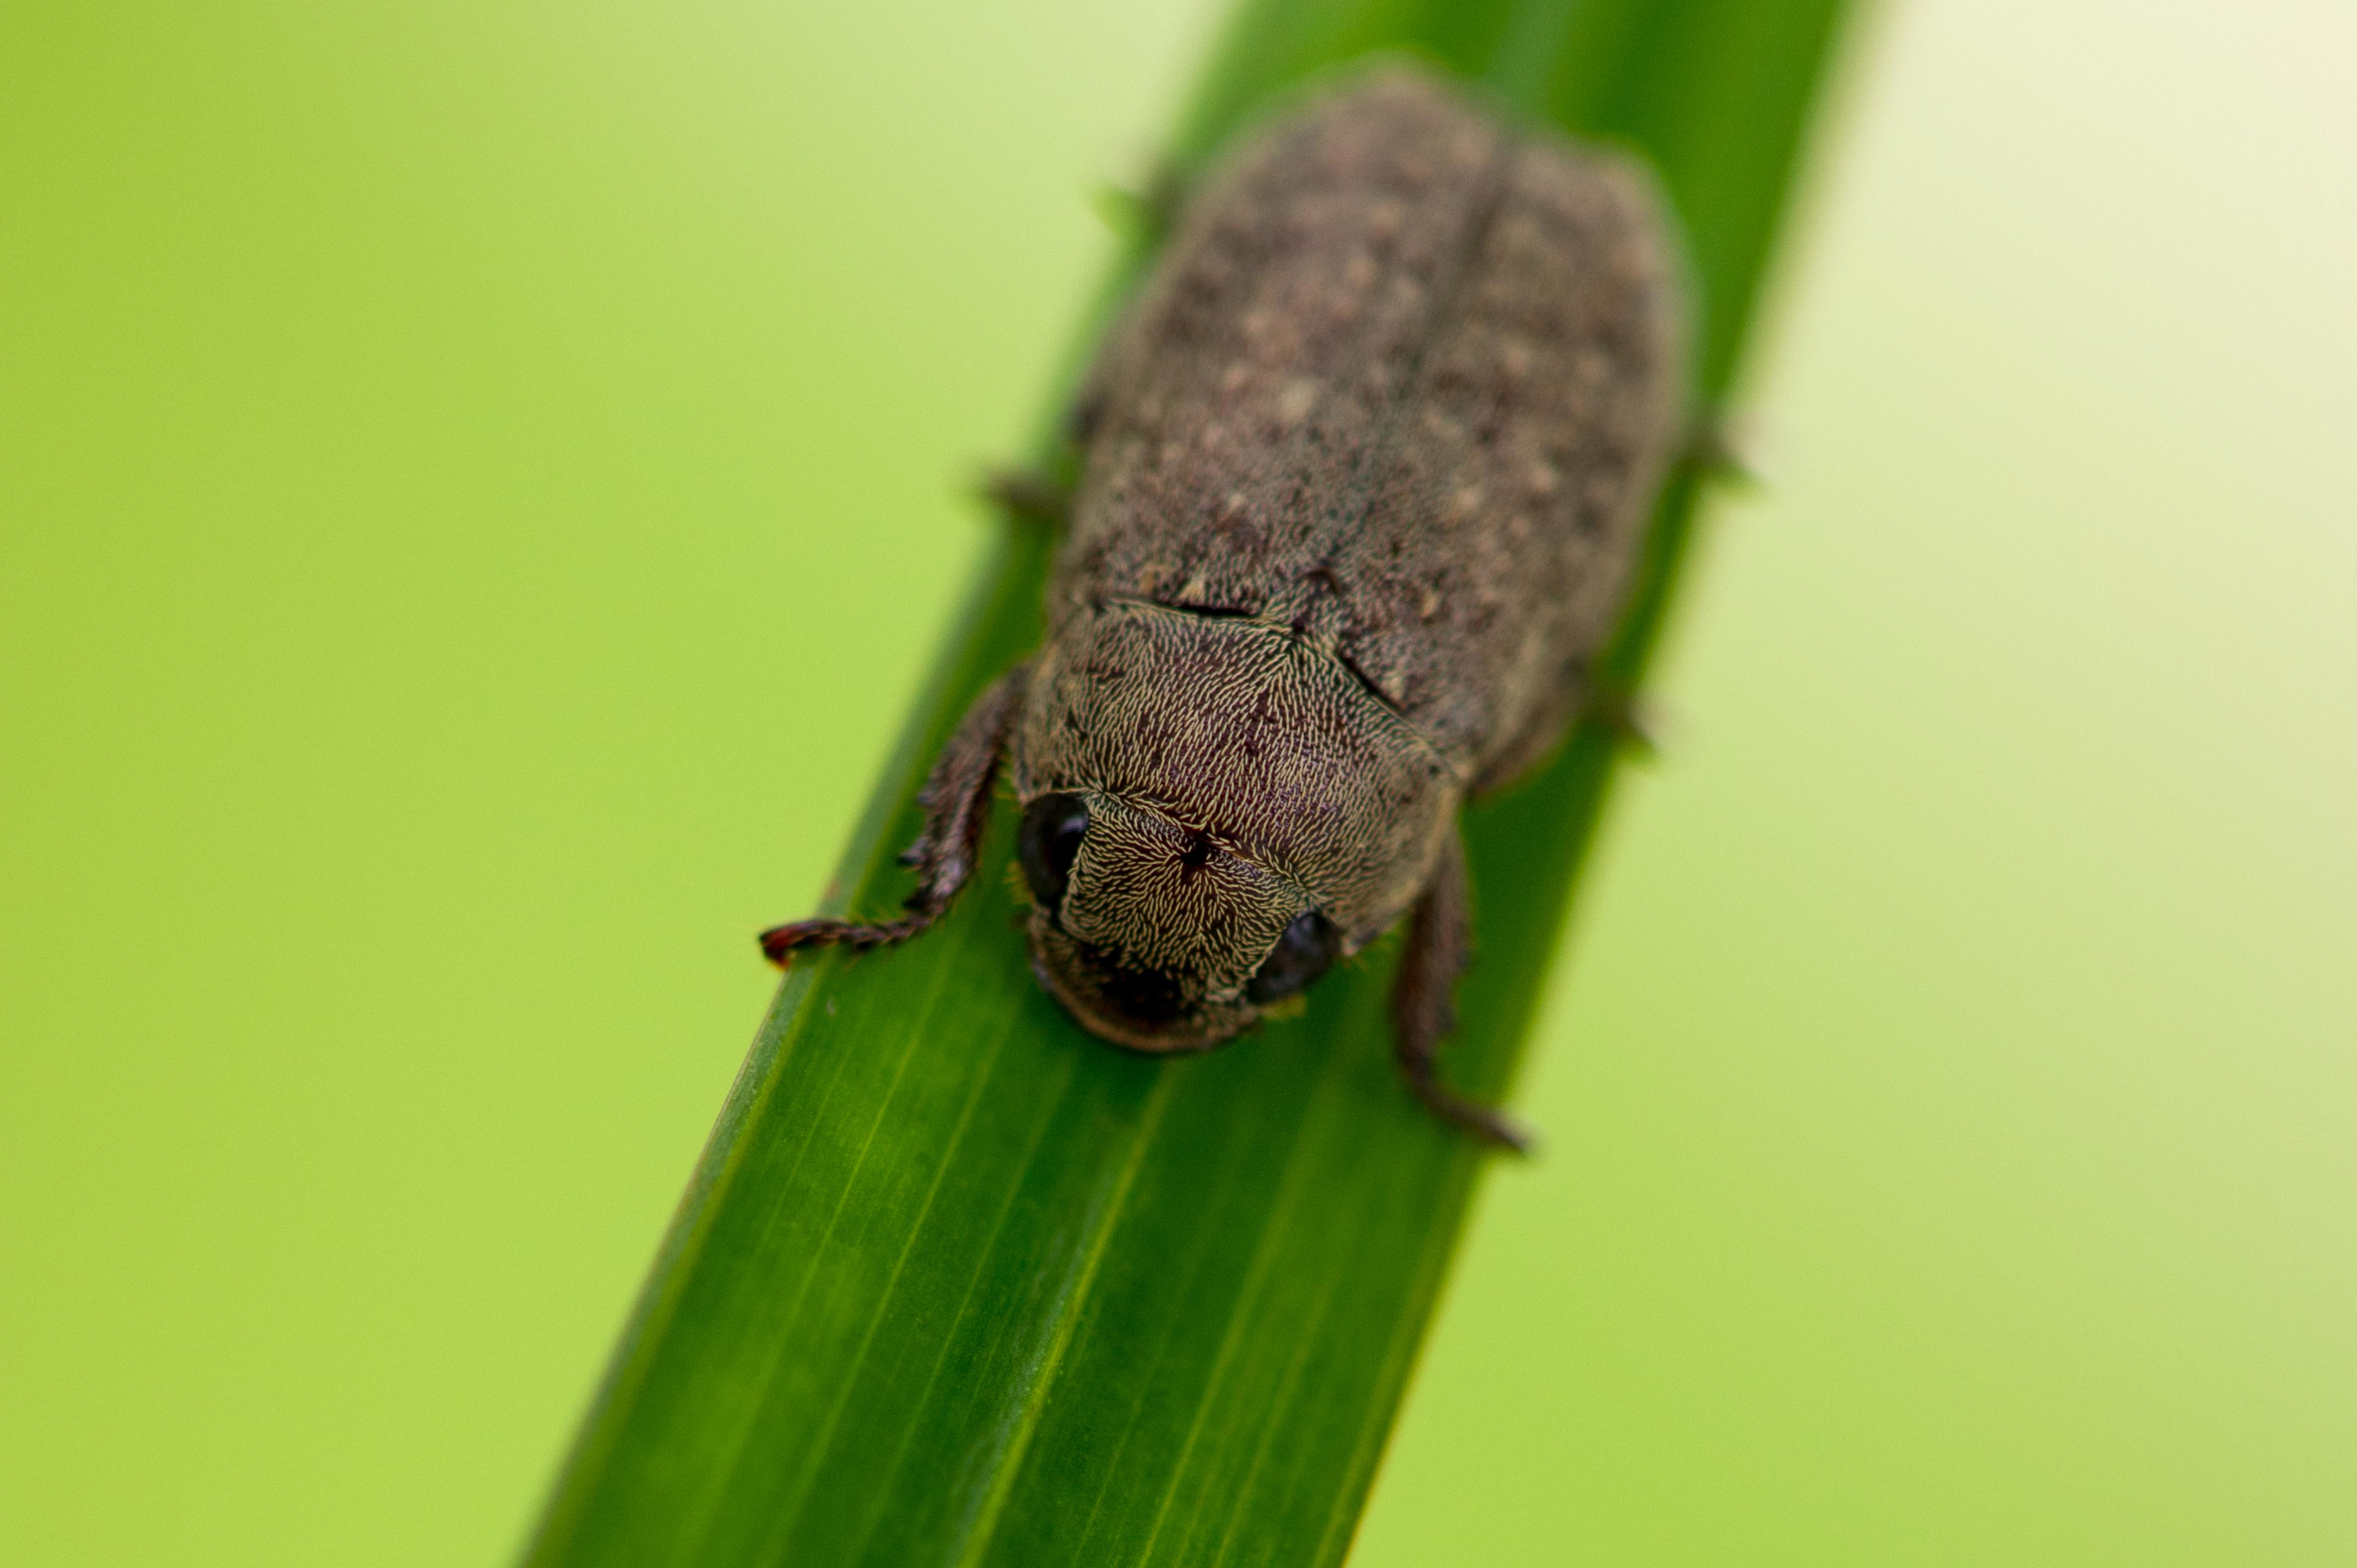 シナコイチャコガネ 虫の写真と生態なら昆虫写真図鑑 ムシミル